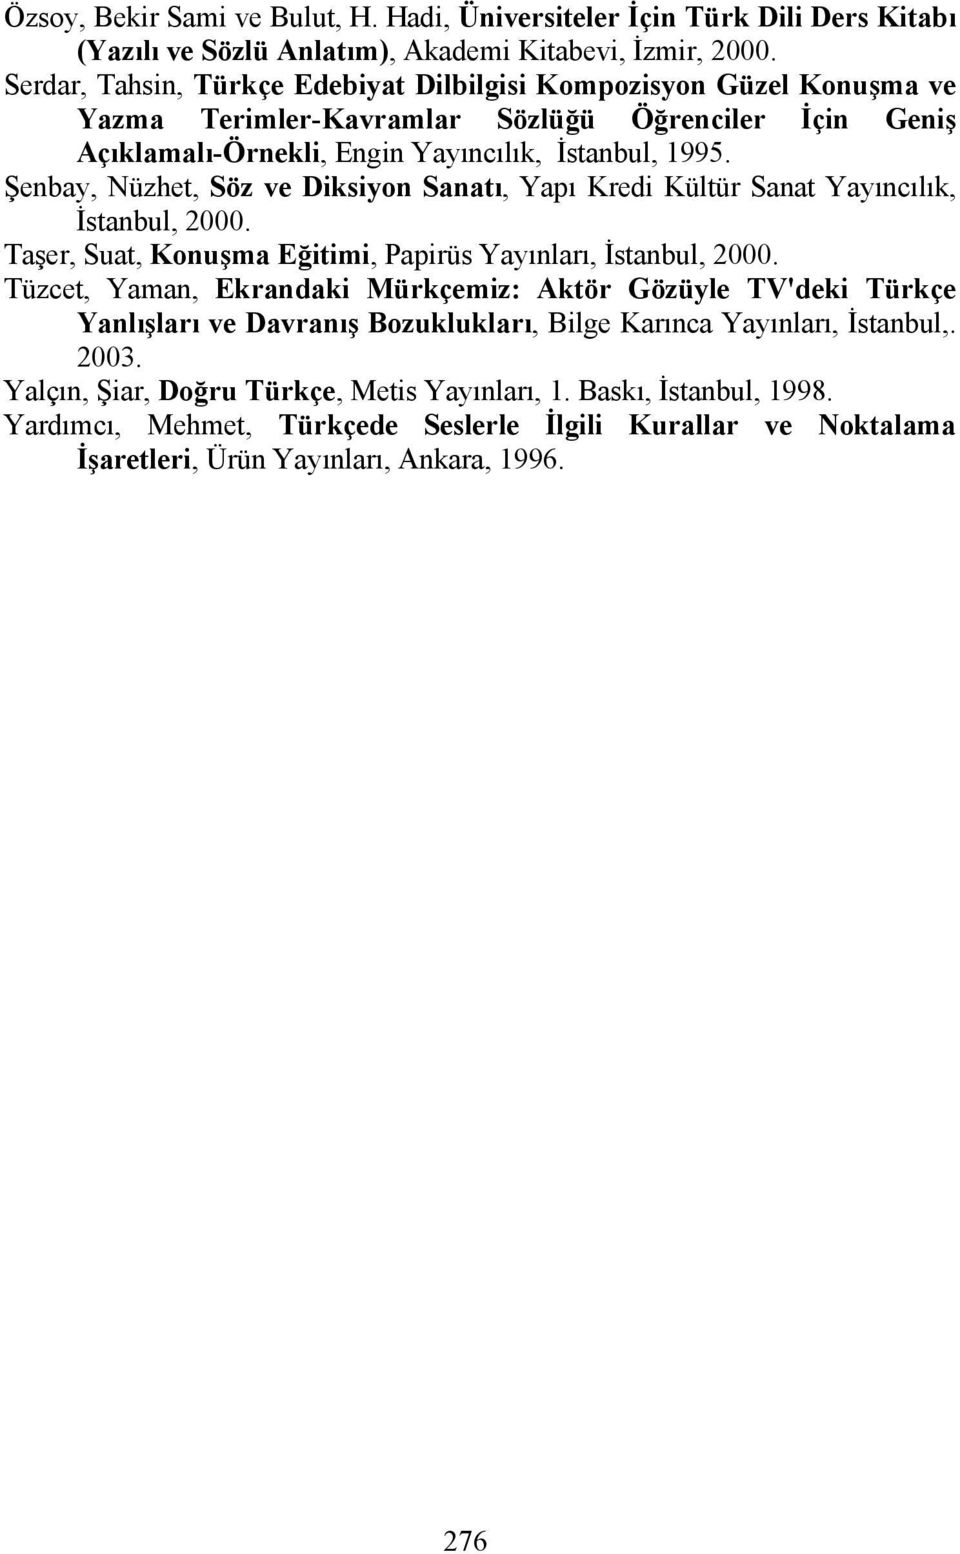 Şenbay, Nüzhet, Söz ve Diksiyon Sanatı, Yapı Kredi Kültür Sanat Yayıncılık, İstanbul, 2000. Taşer, Suat, Konuşma Eğitimi, Papirüs Yayınları, İstanbul, 2000.